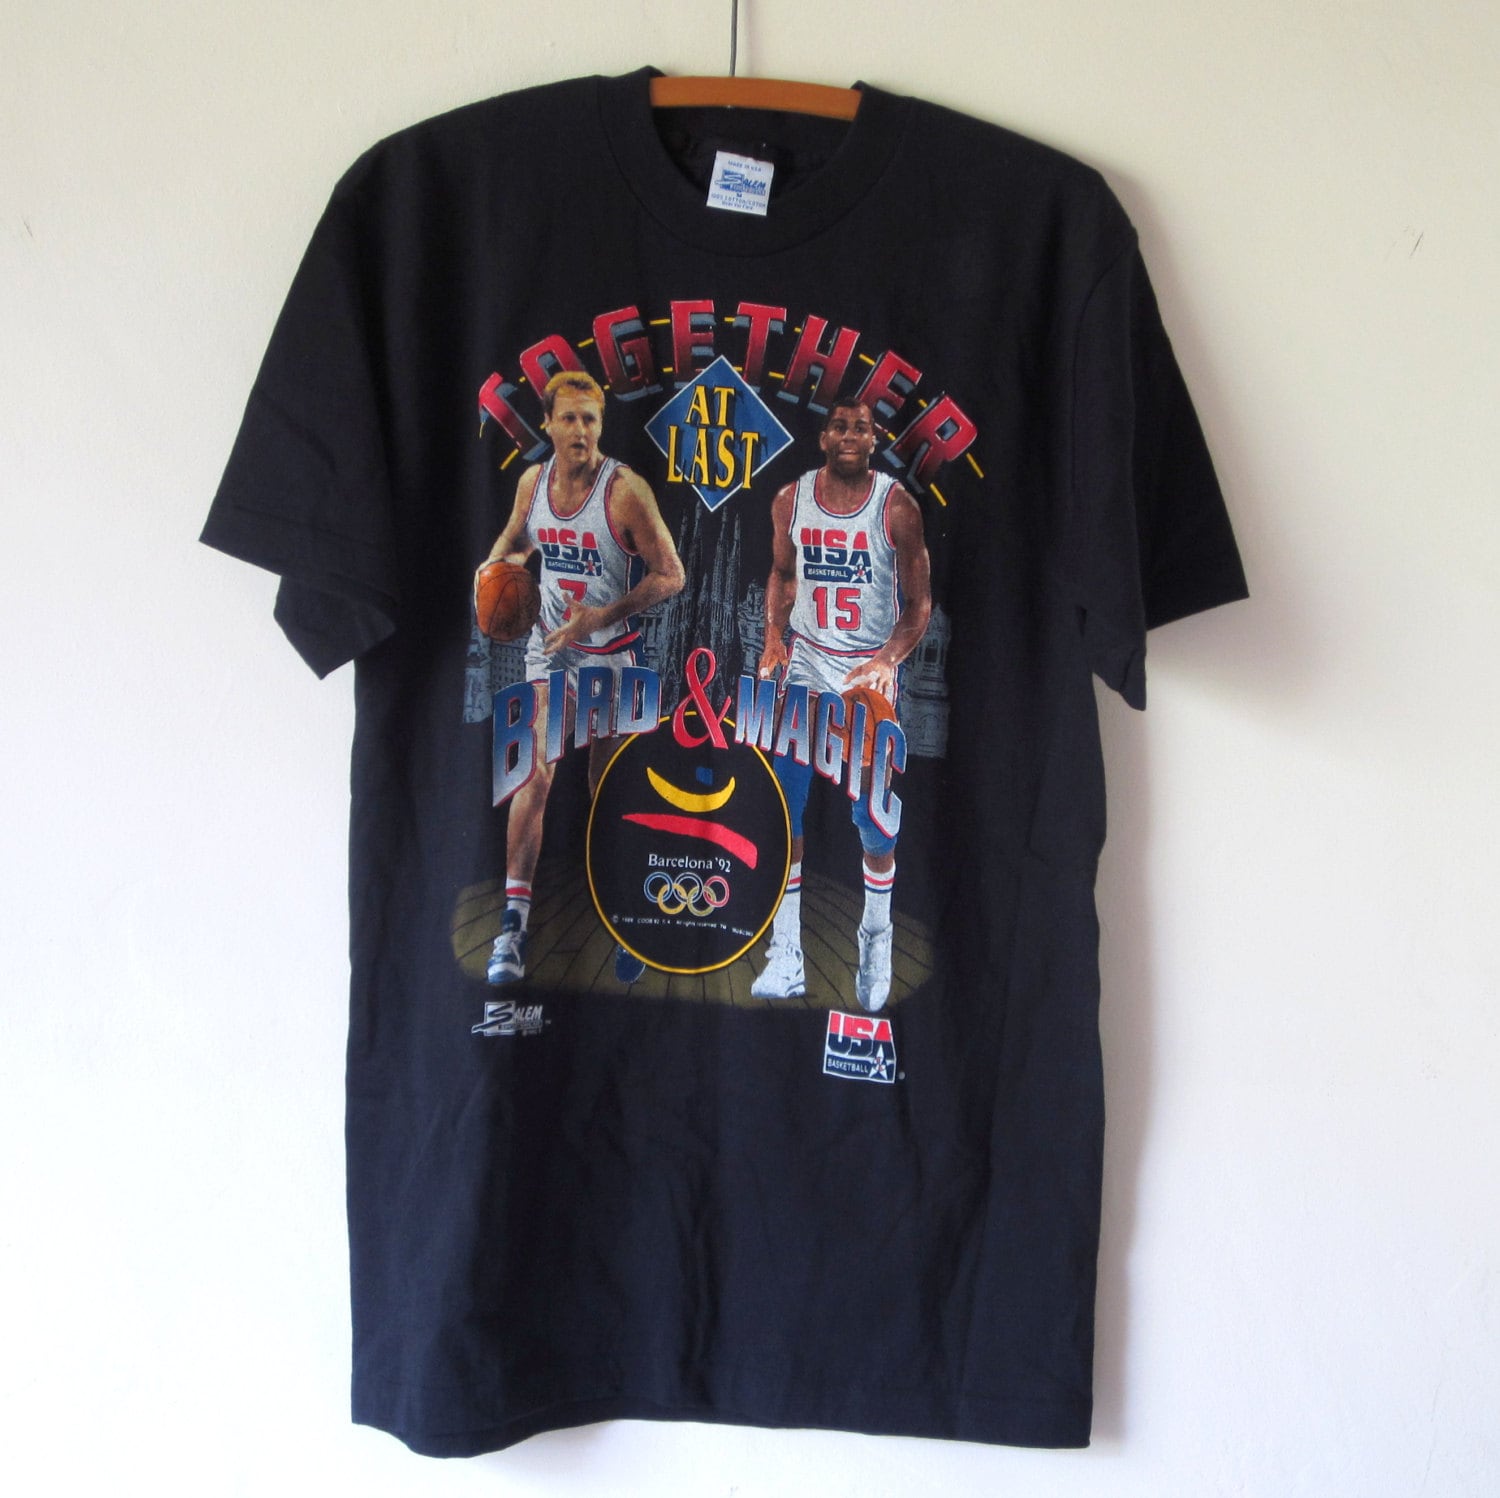 VTG 1992 Magic Johnson Larry Bird T Shirt Sz. M Medium Tee